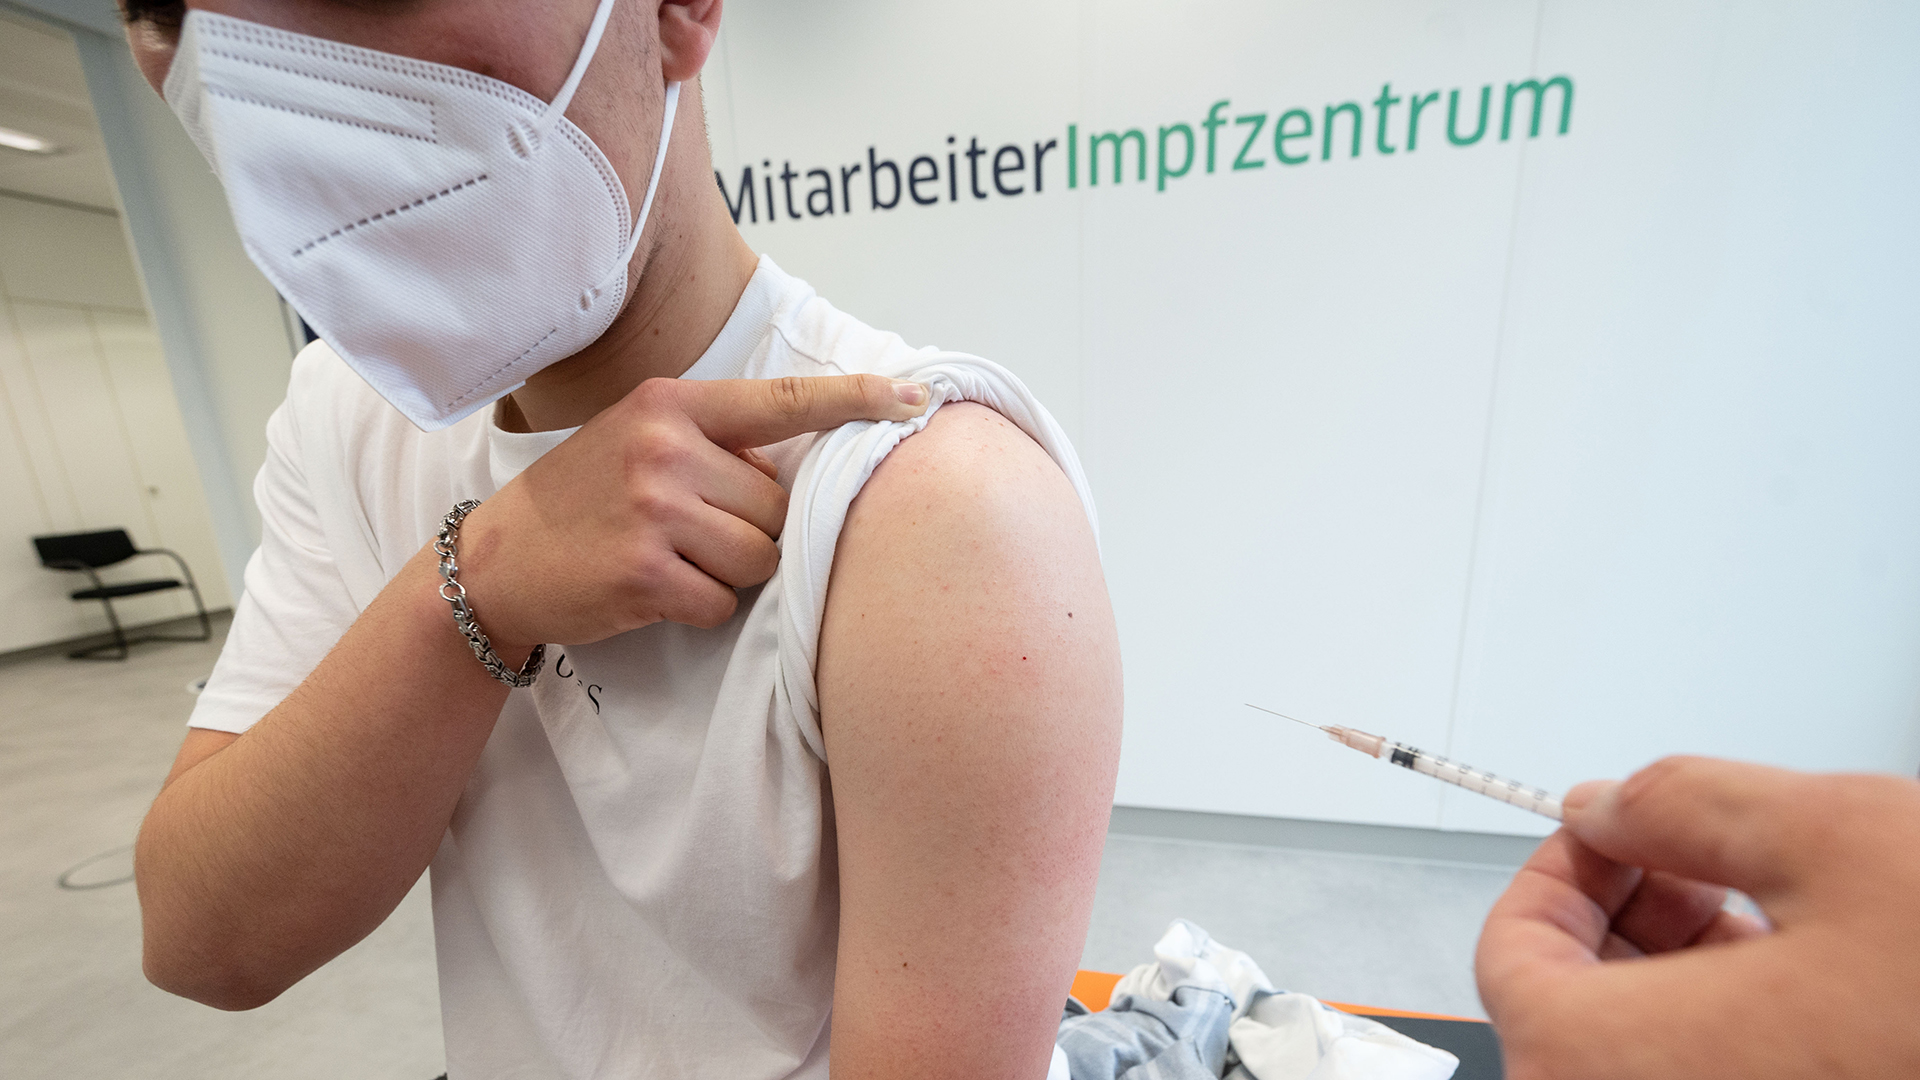 Ein Mitarbeiter der Landesbank Baden-Württemberg (LBBW) wird im Mitarbeiterimpfzentrum der Bank mit dem Corona-Impfstoff von Biontech/Pfizer geimpft. | dpa